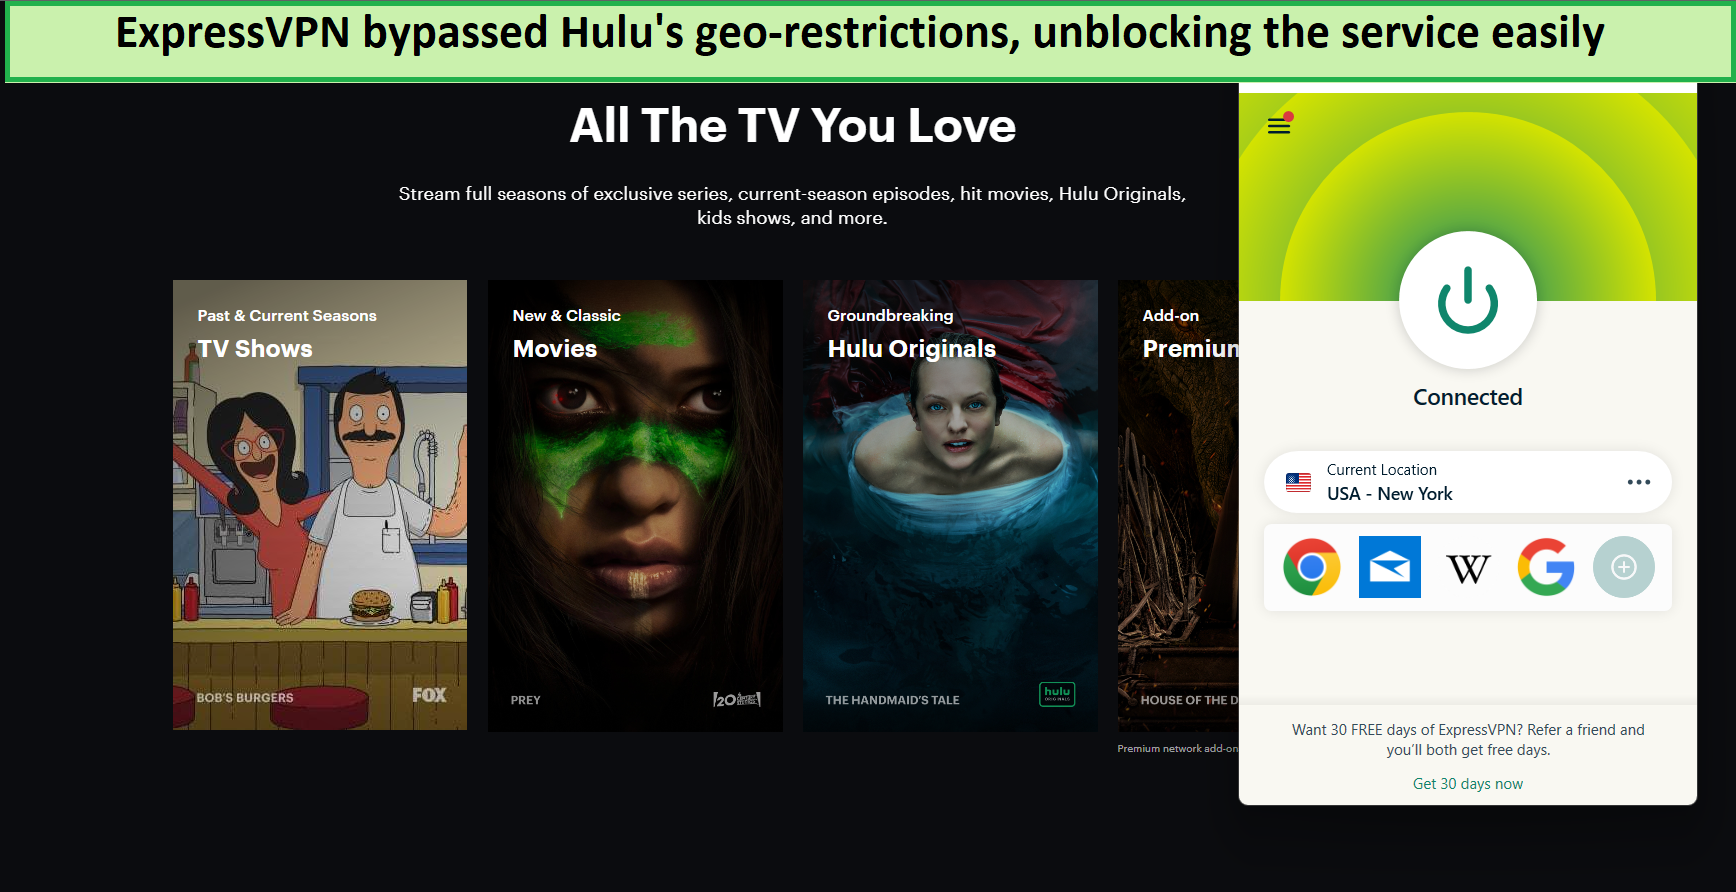  Maak gemakkelijk Hulu ontgrendelen op Android met ExpressVPN. 